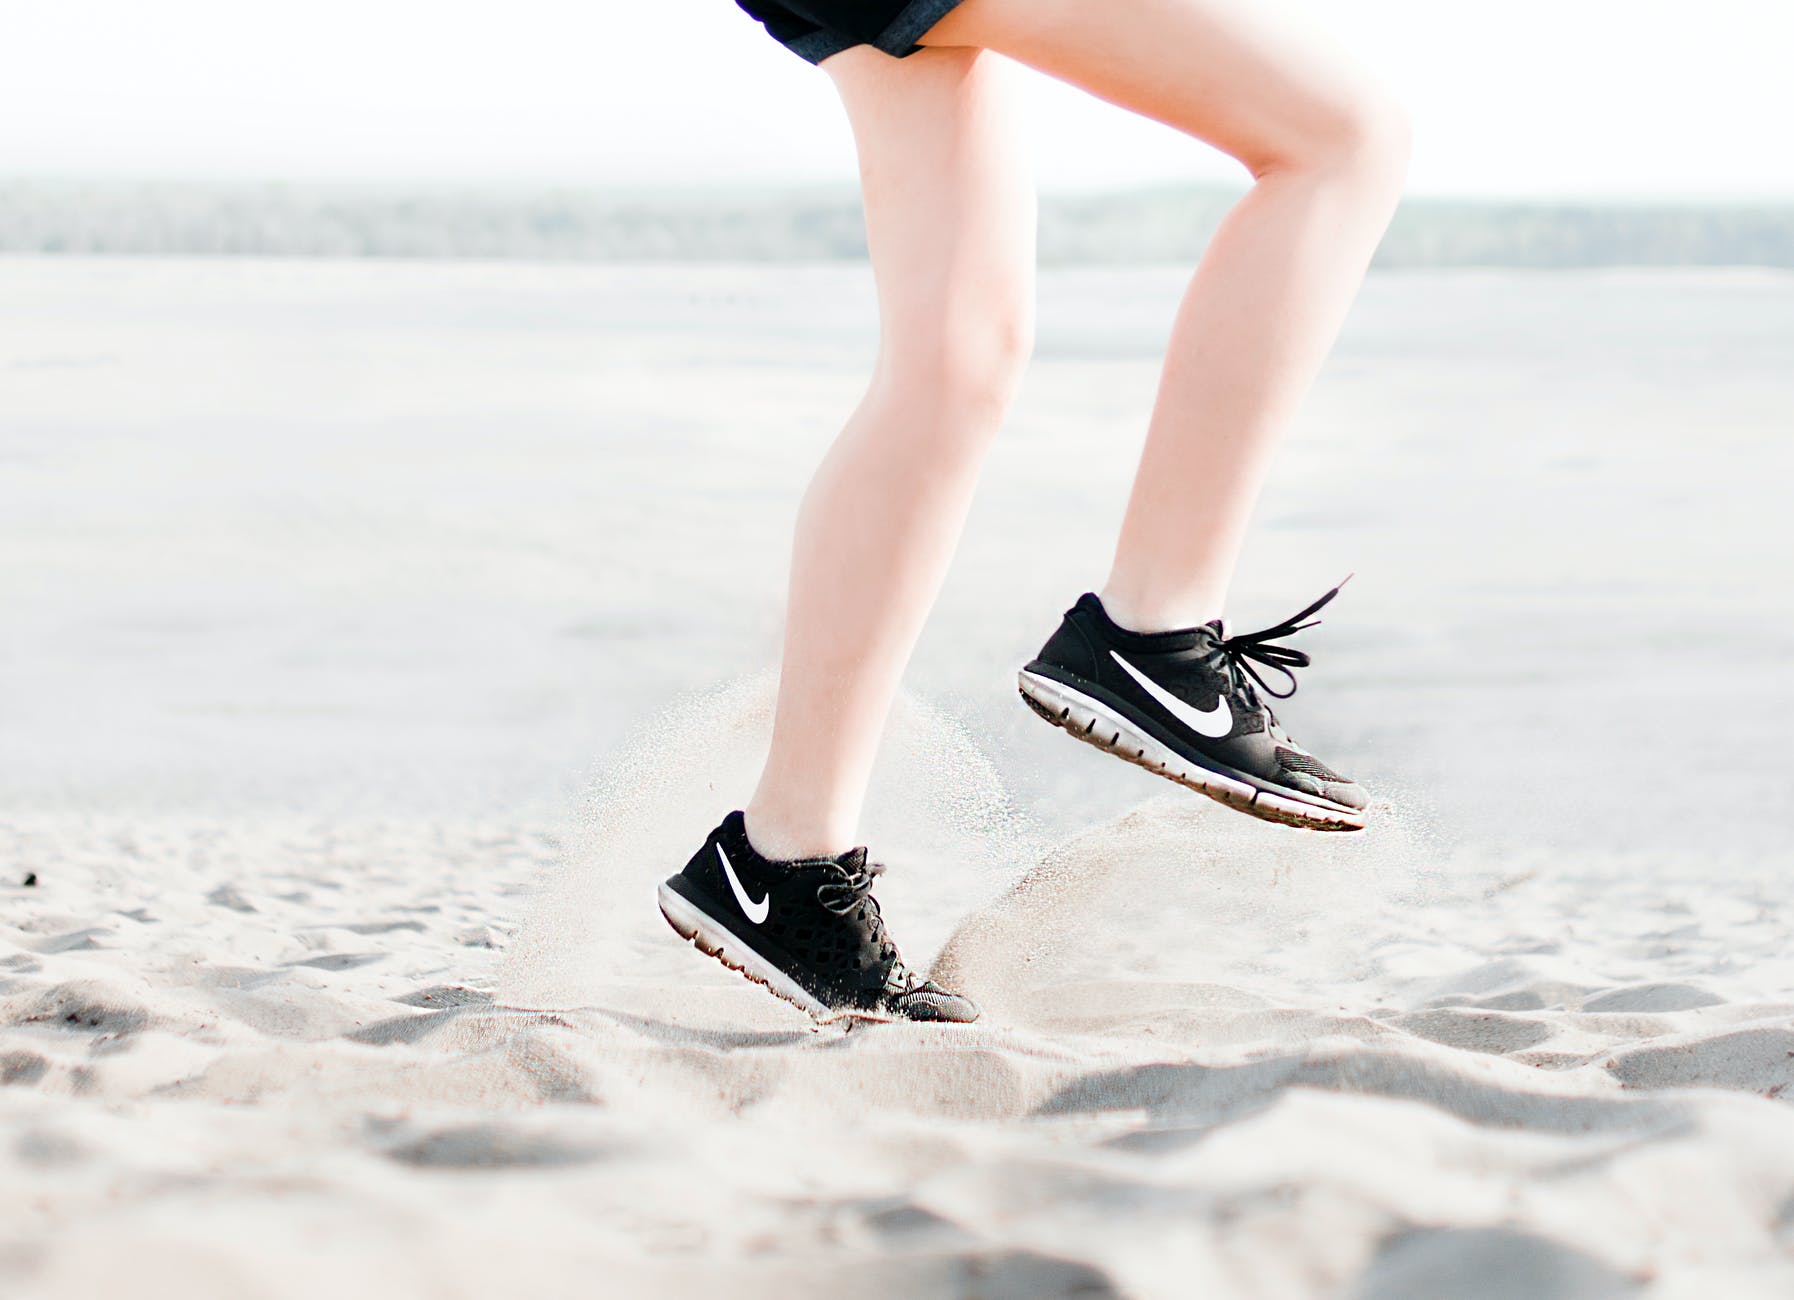 Τρέξιμο στην άμμο – Όλα όσα πρέπει να προσέχετε